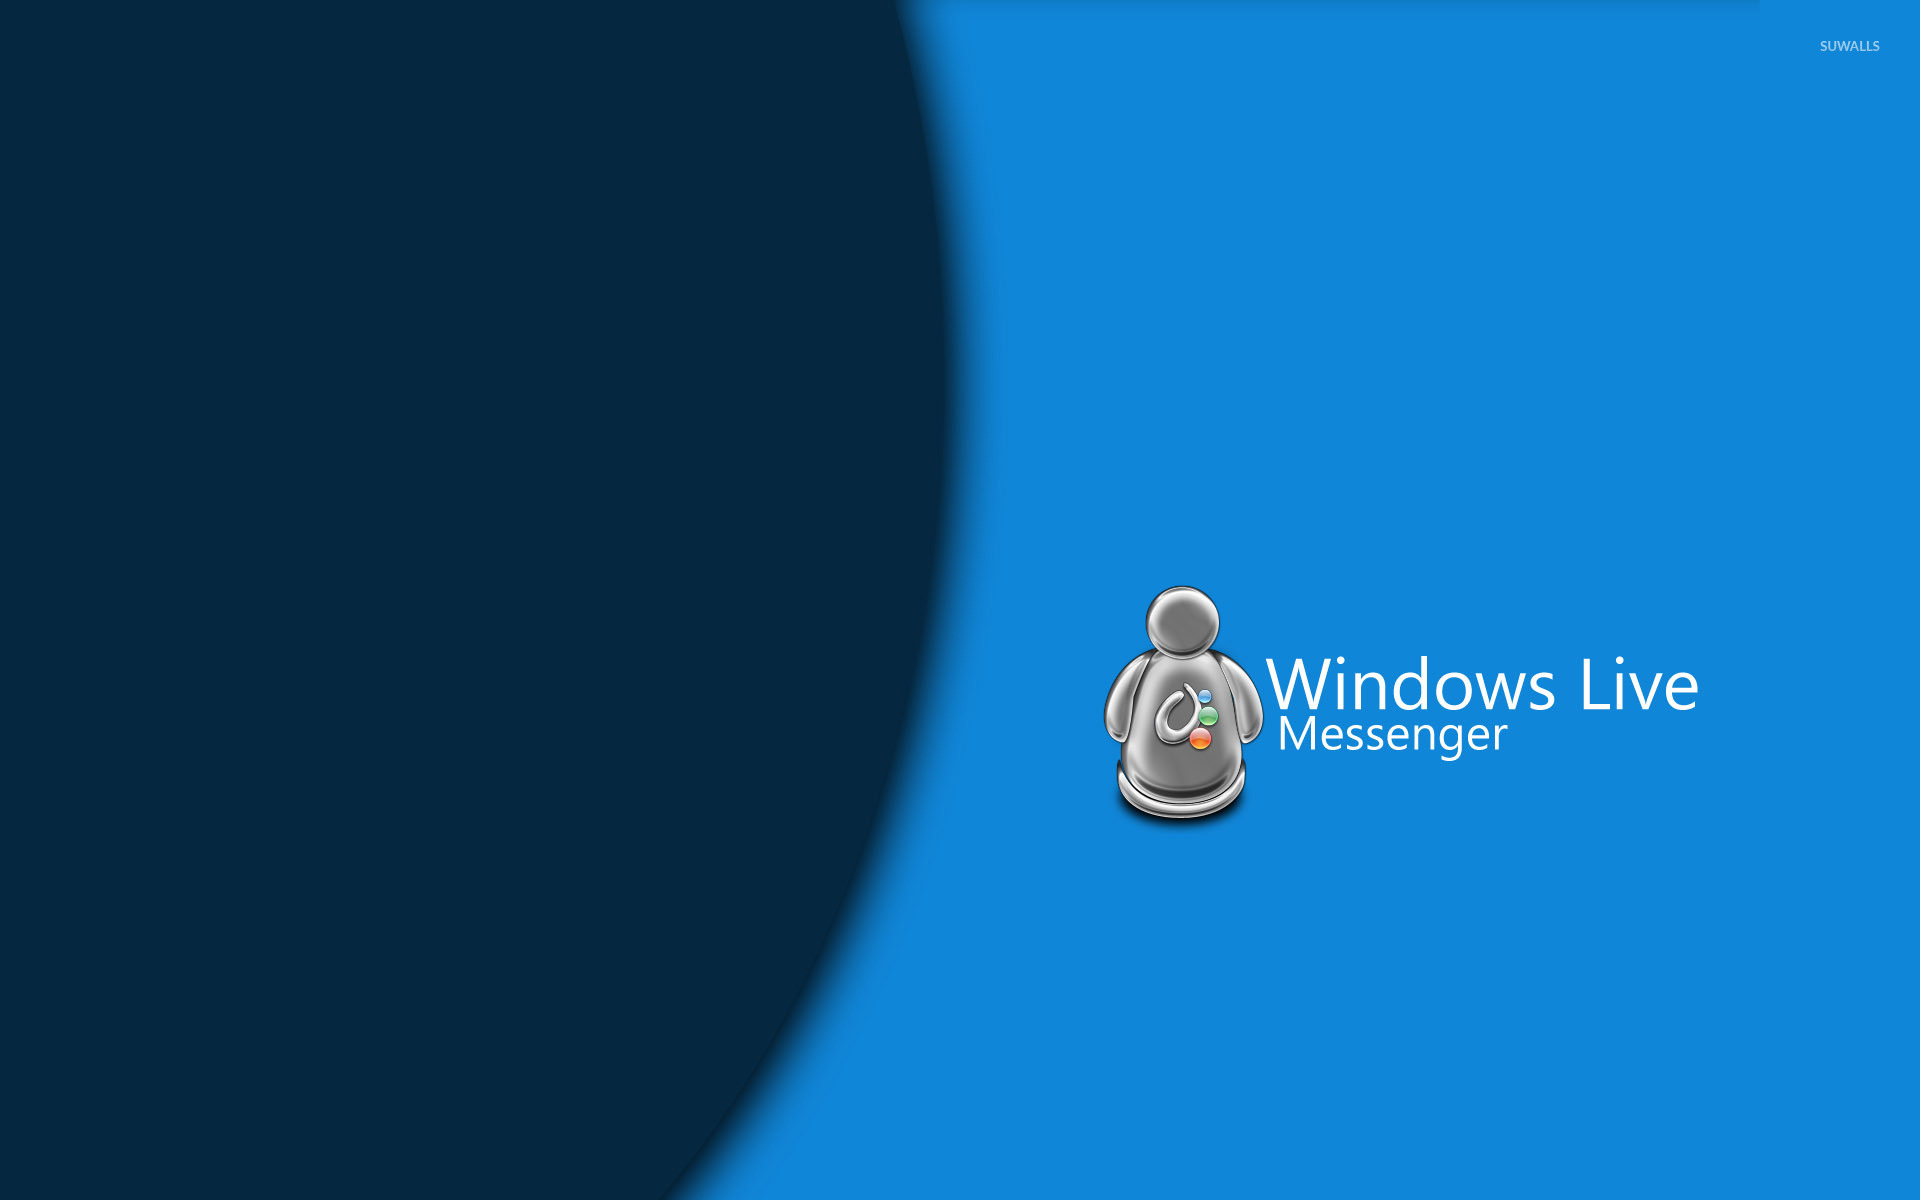 Windows Live Messenger 2 Wallpaper Computer Wallpapers